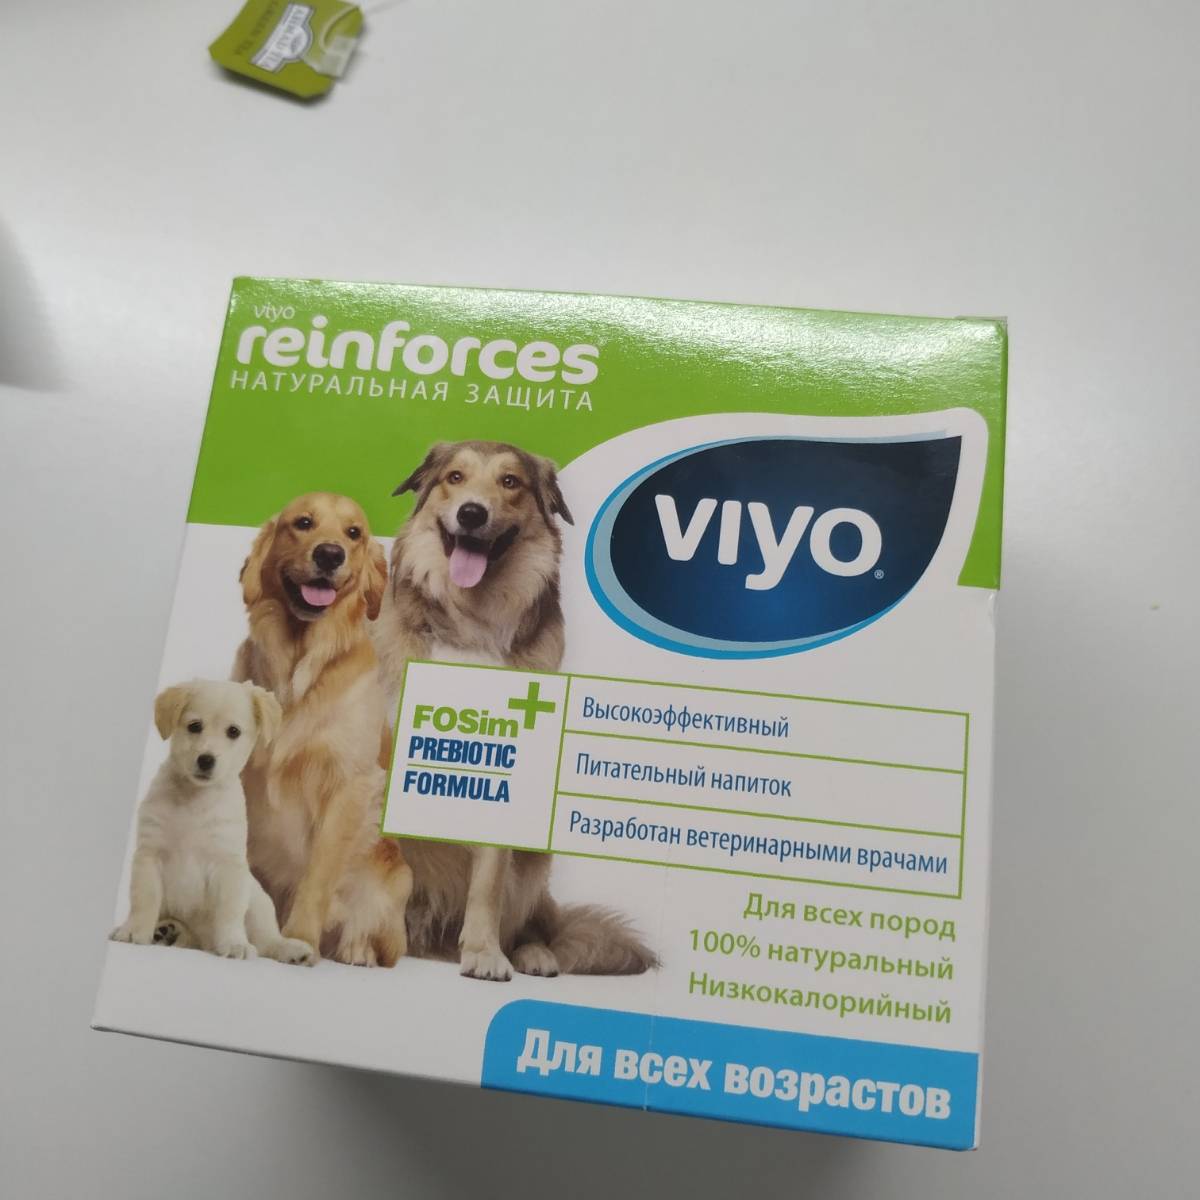 Viyo для кошек: инструкция, fosim prebiotic formula